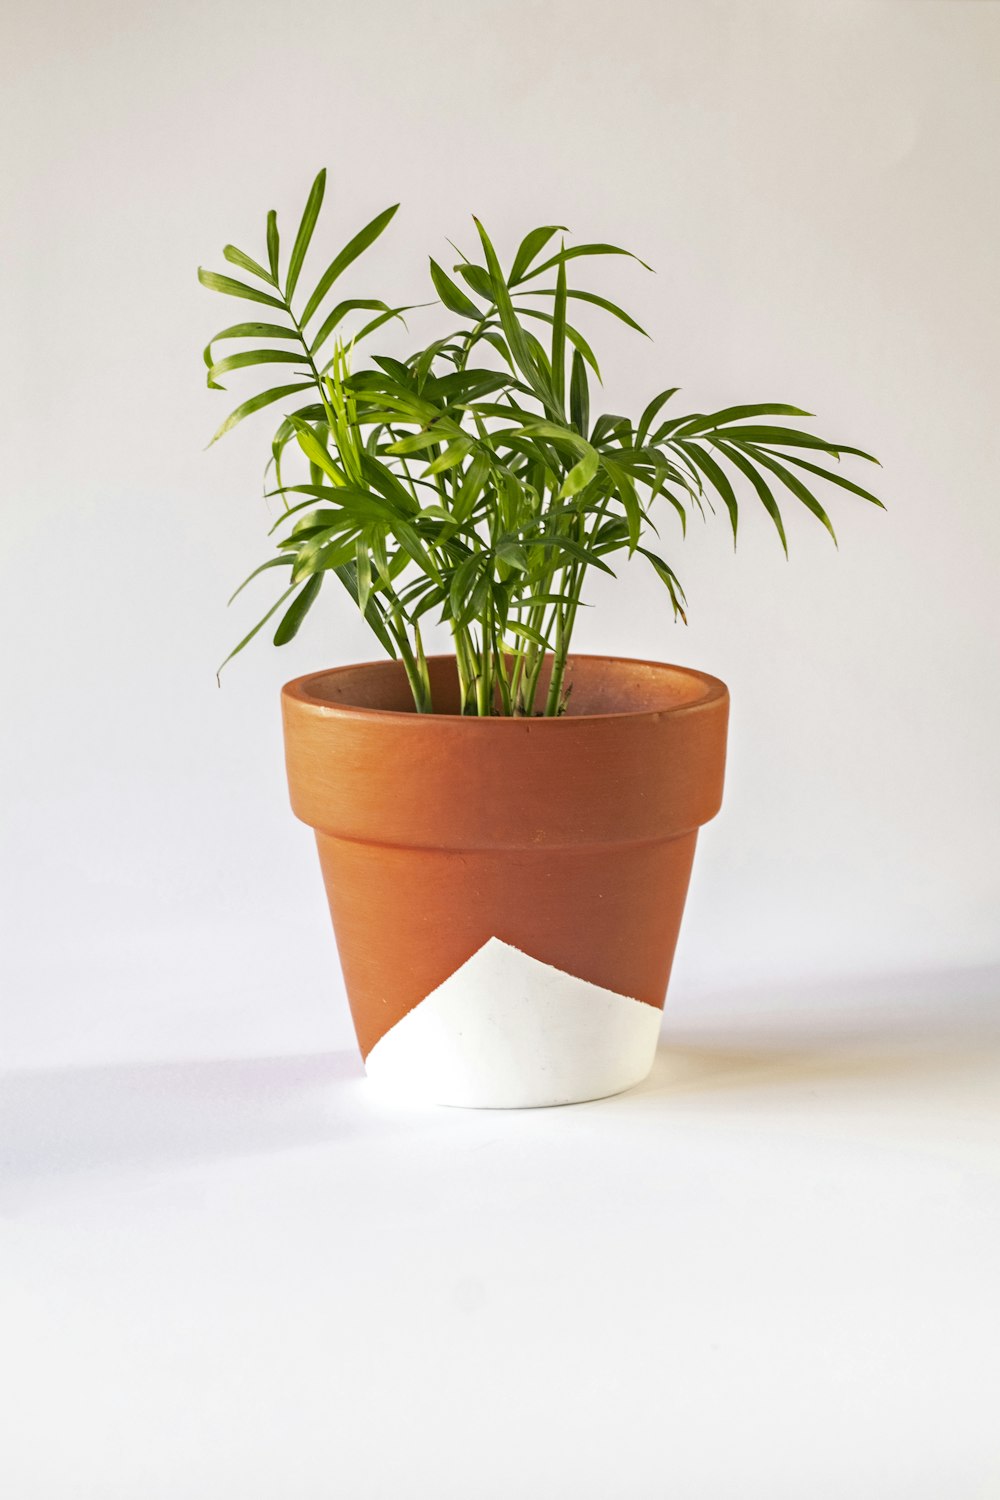 grüne Pflanze auf weißem und braunem Topf